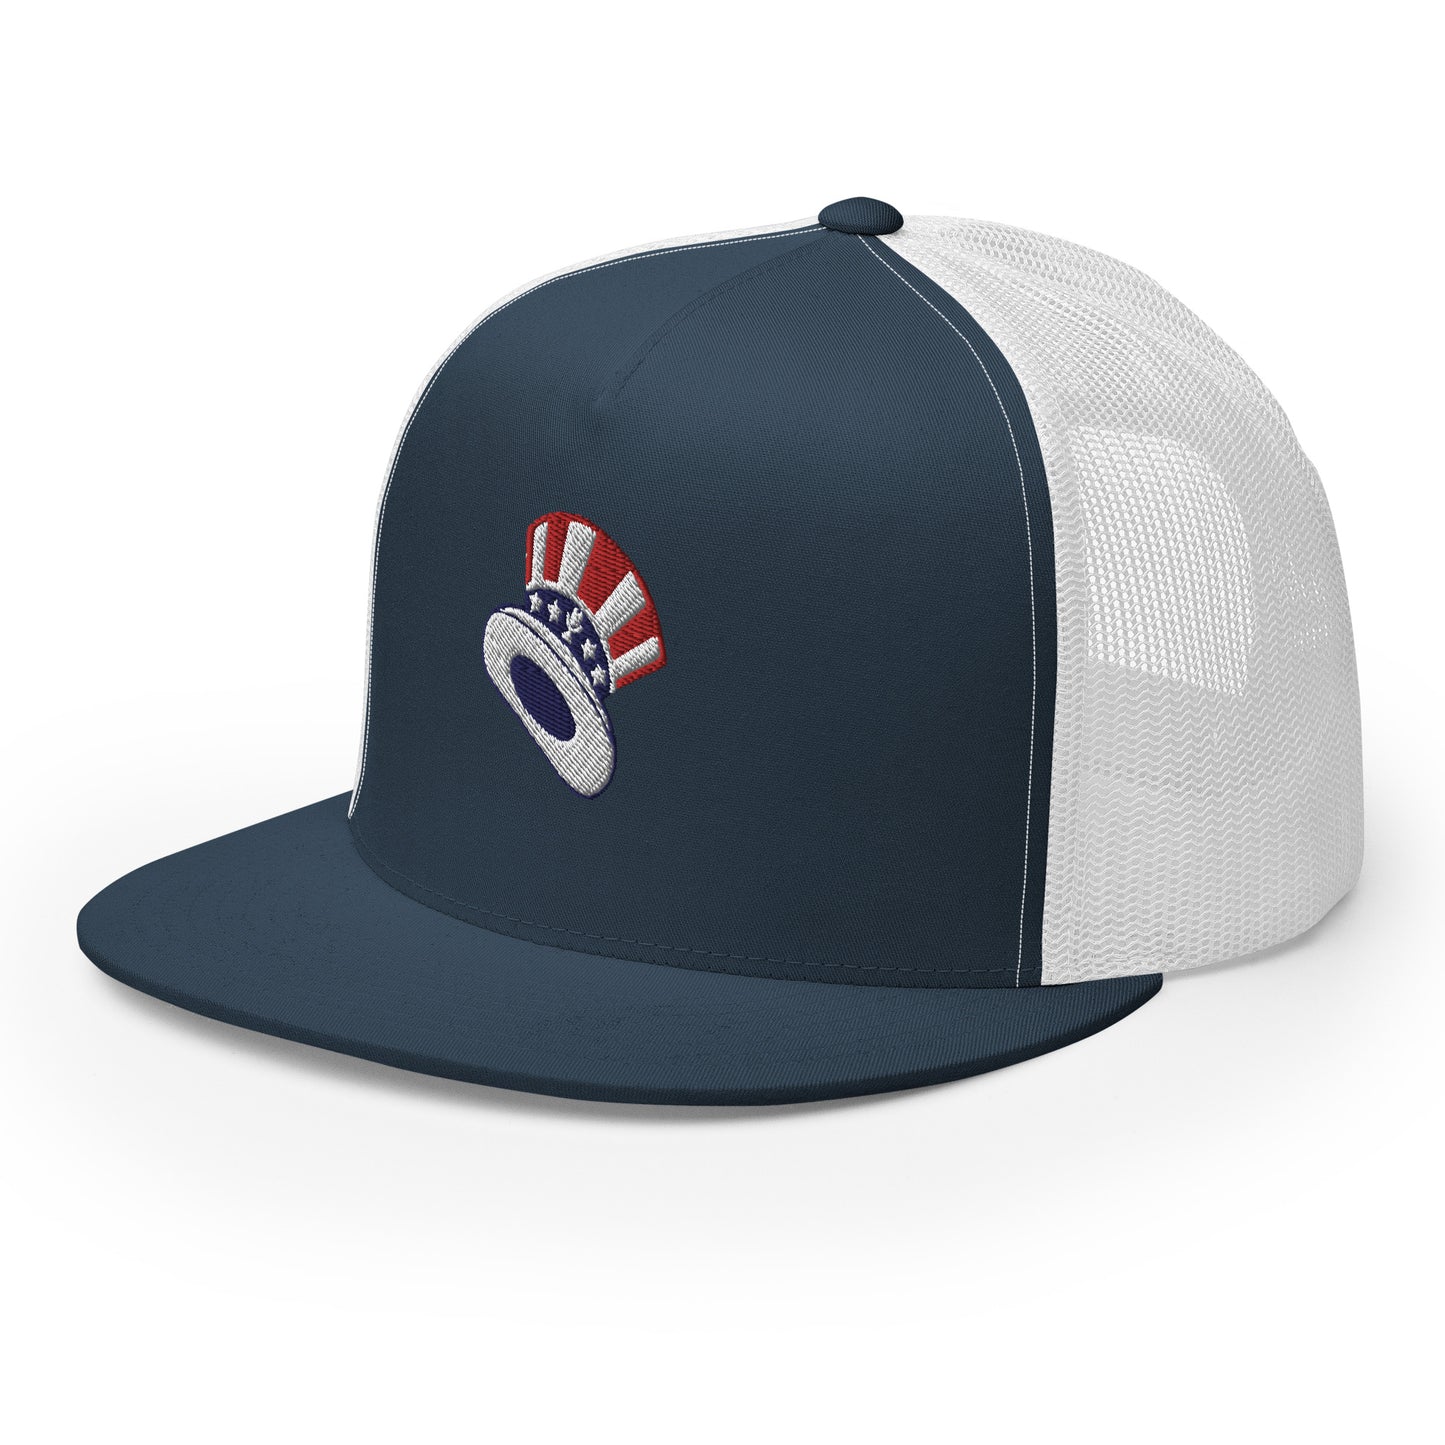 Fun Hat / Top Hat Trucker Cap